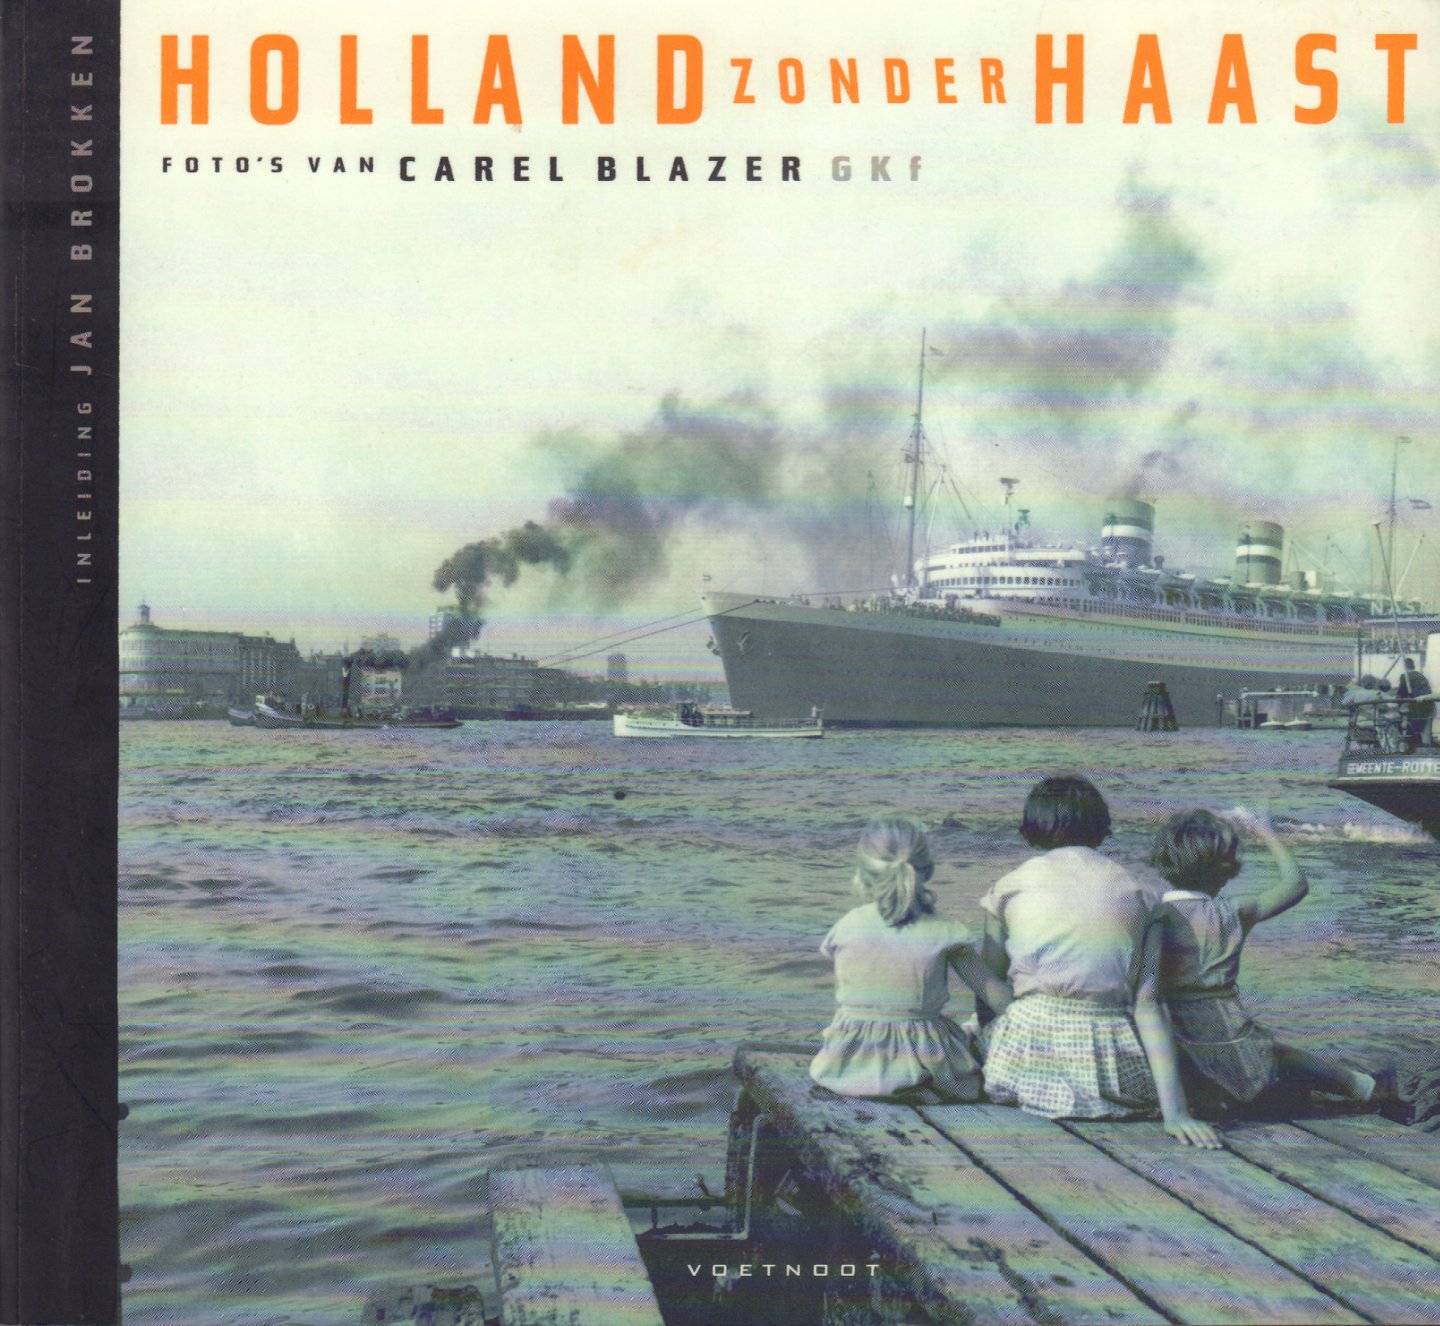 Blazer, Carel - Holland zonder Haast, Foto's van Carel Blazer (met een inleiding van Jan Brokken), 75 pag. softcover, gave staat